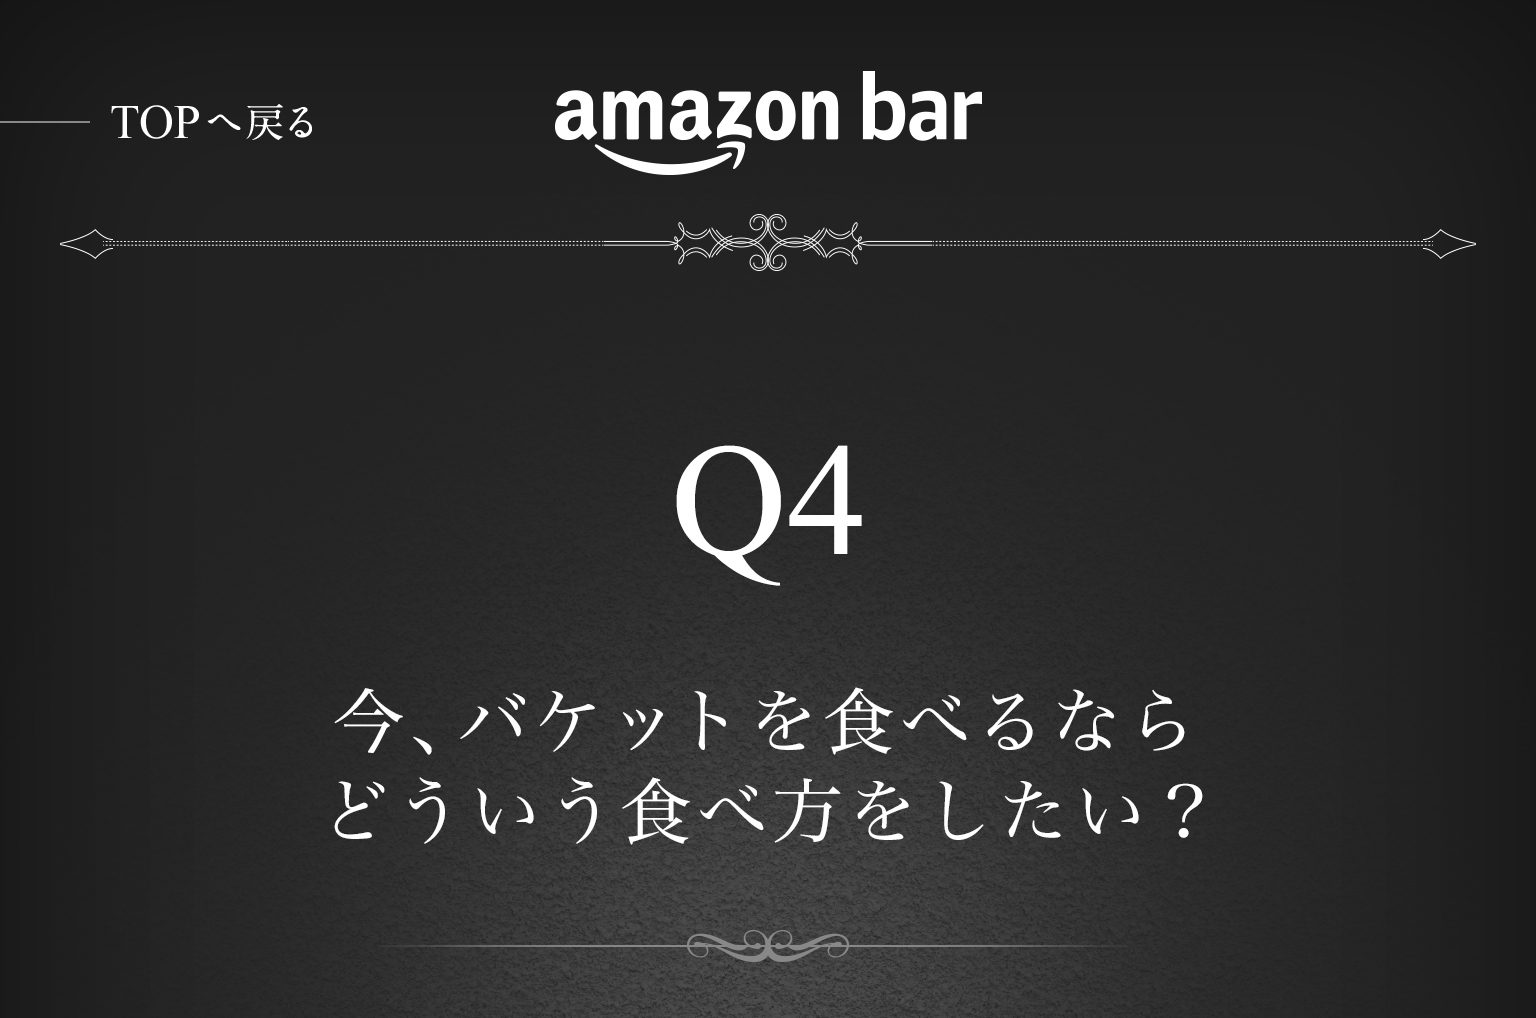 Amazon Bar